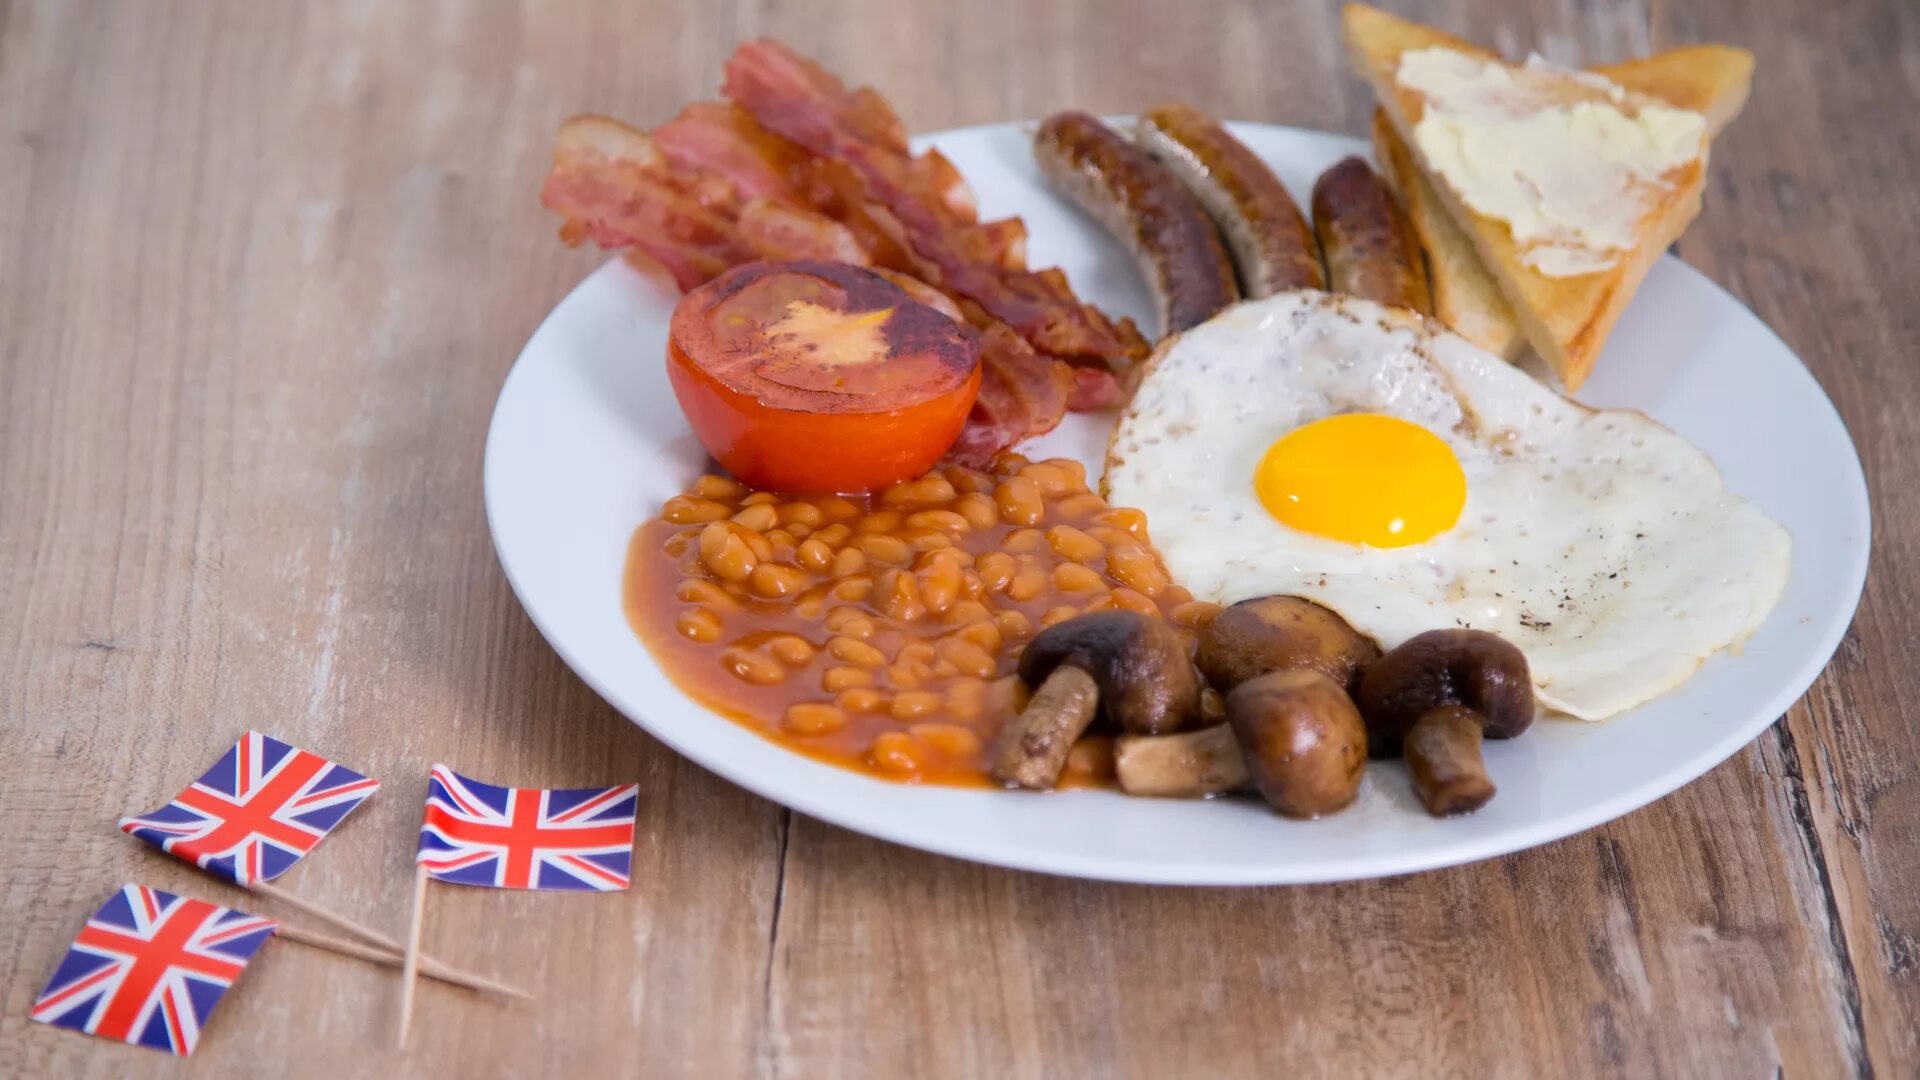 Английский завтрак Британия. Завтрак великобританцев. Завтрак Эдвардианская эпоха Англия. Бритиш Брекфаст. Национальная английская еда